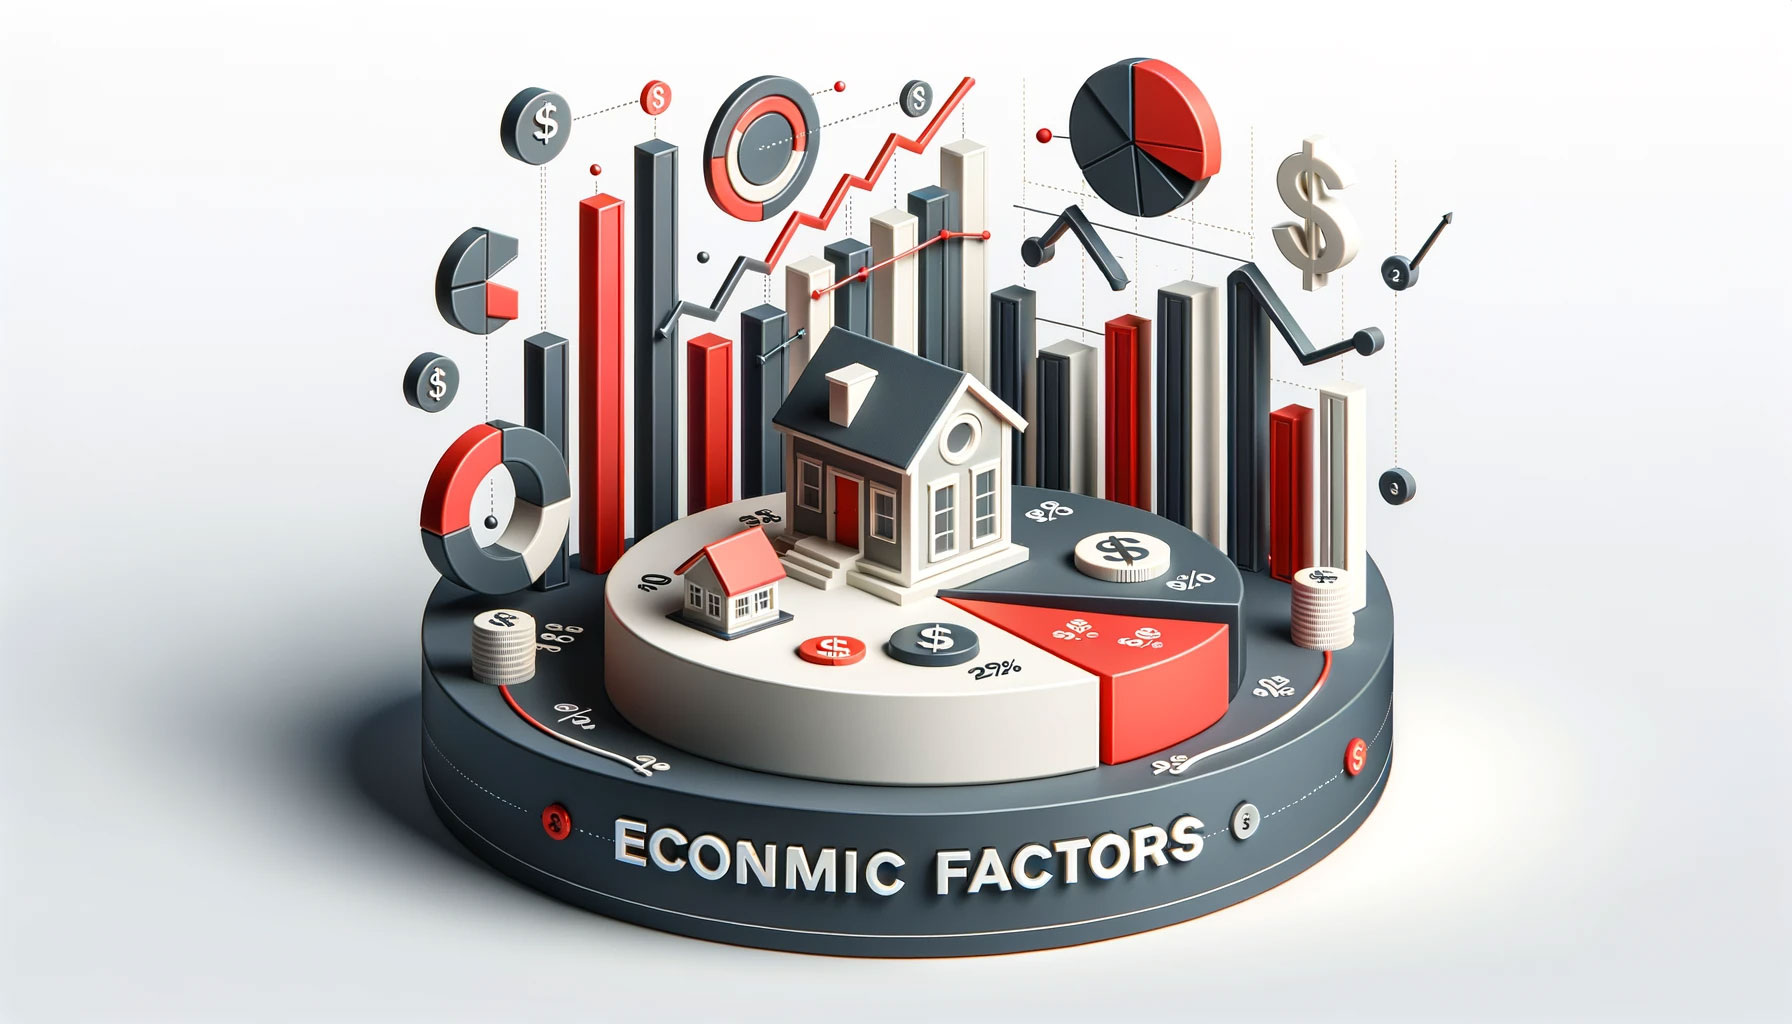 Economic Factors
